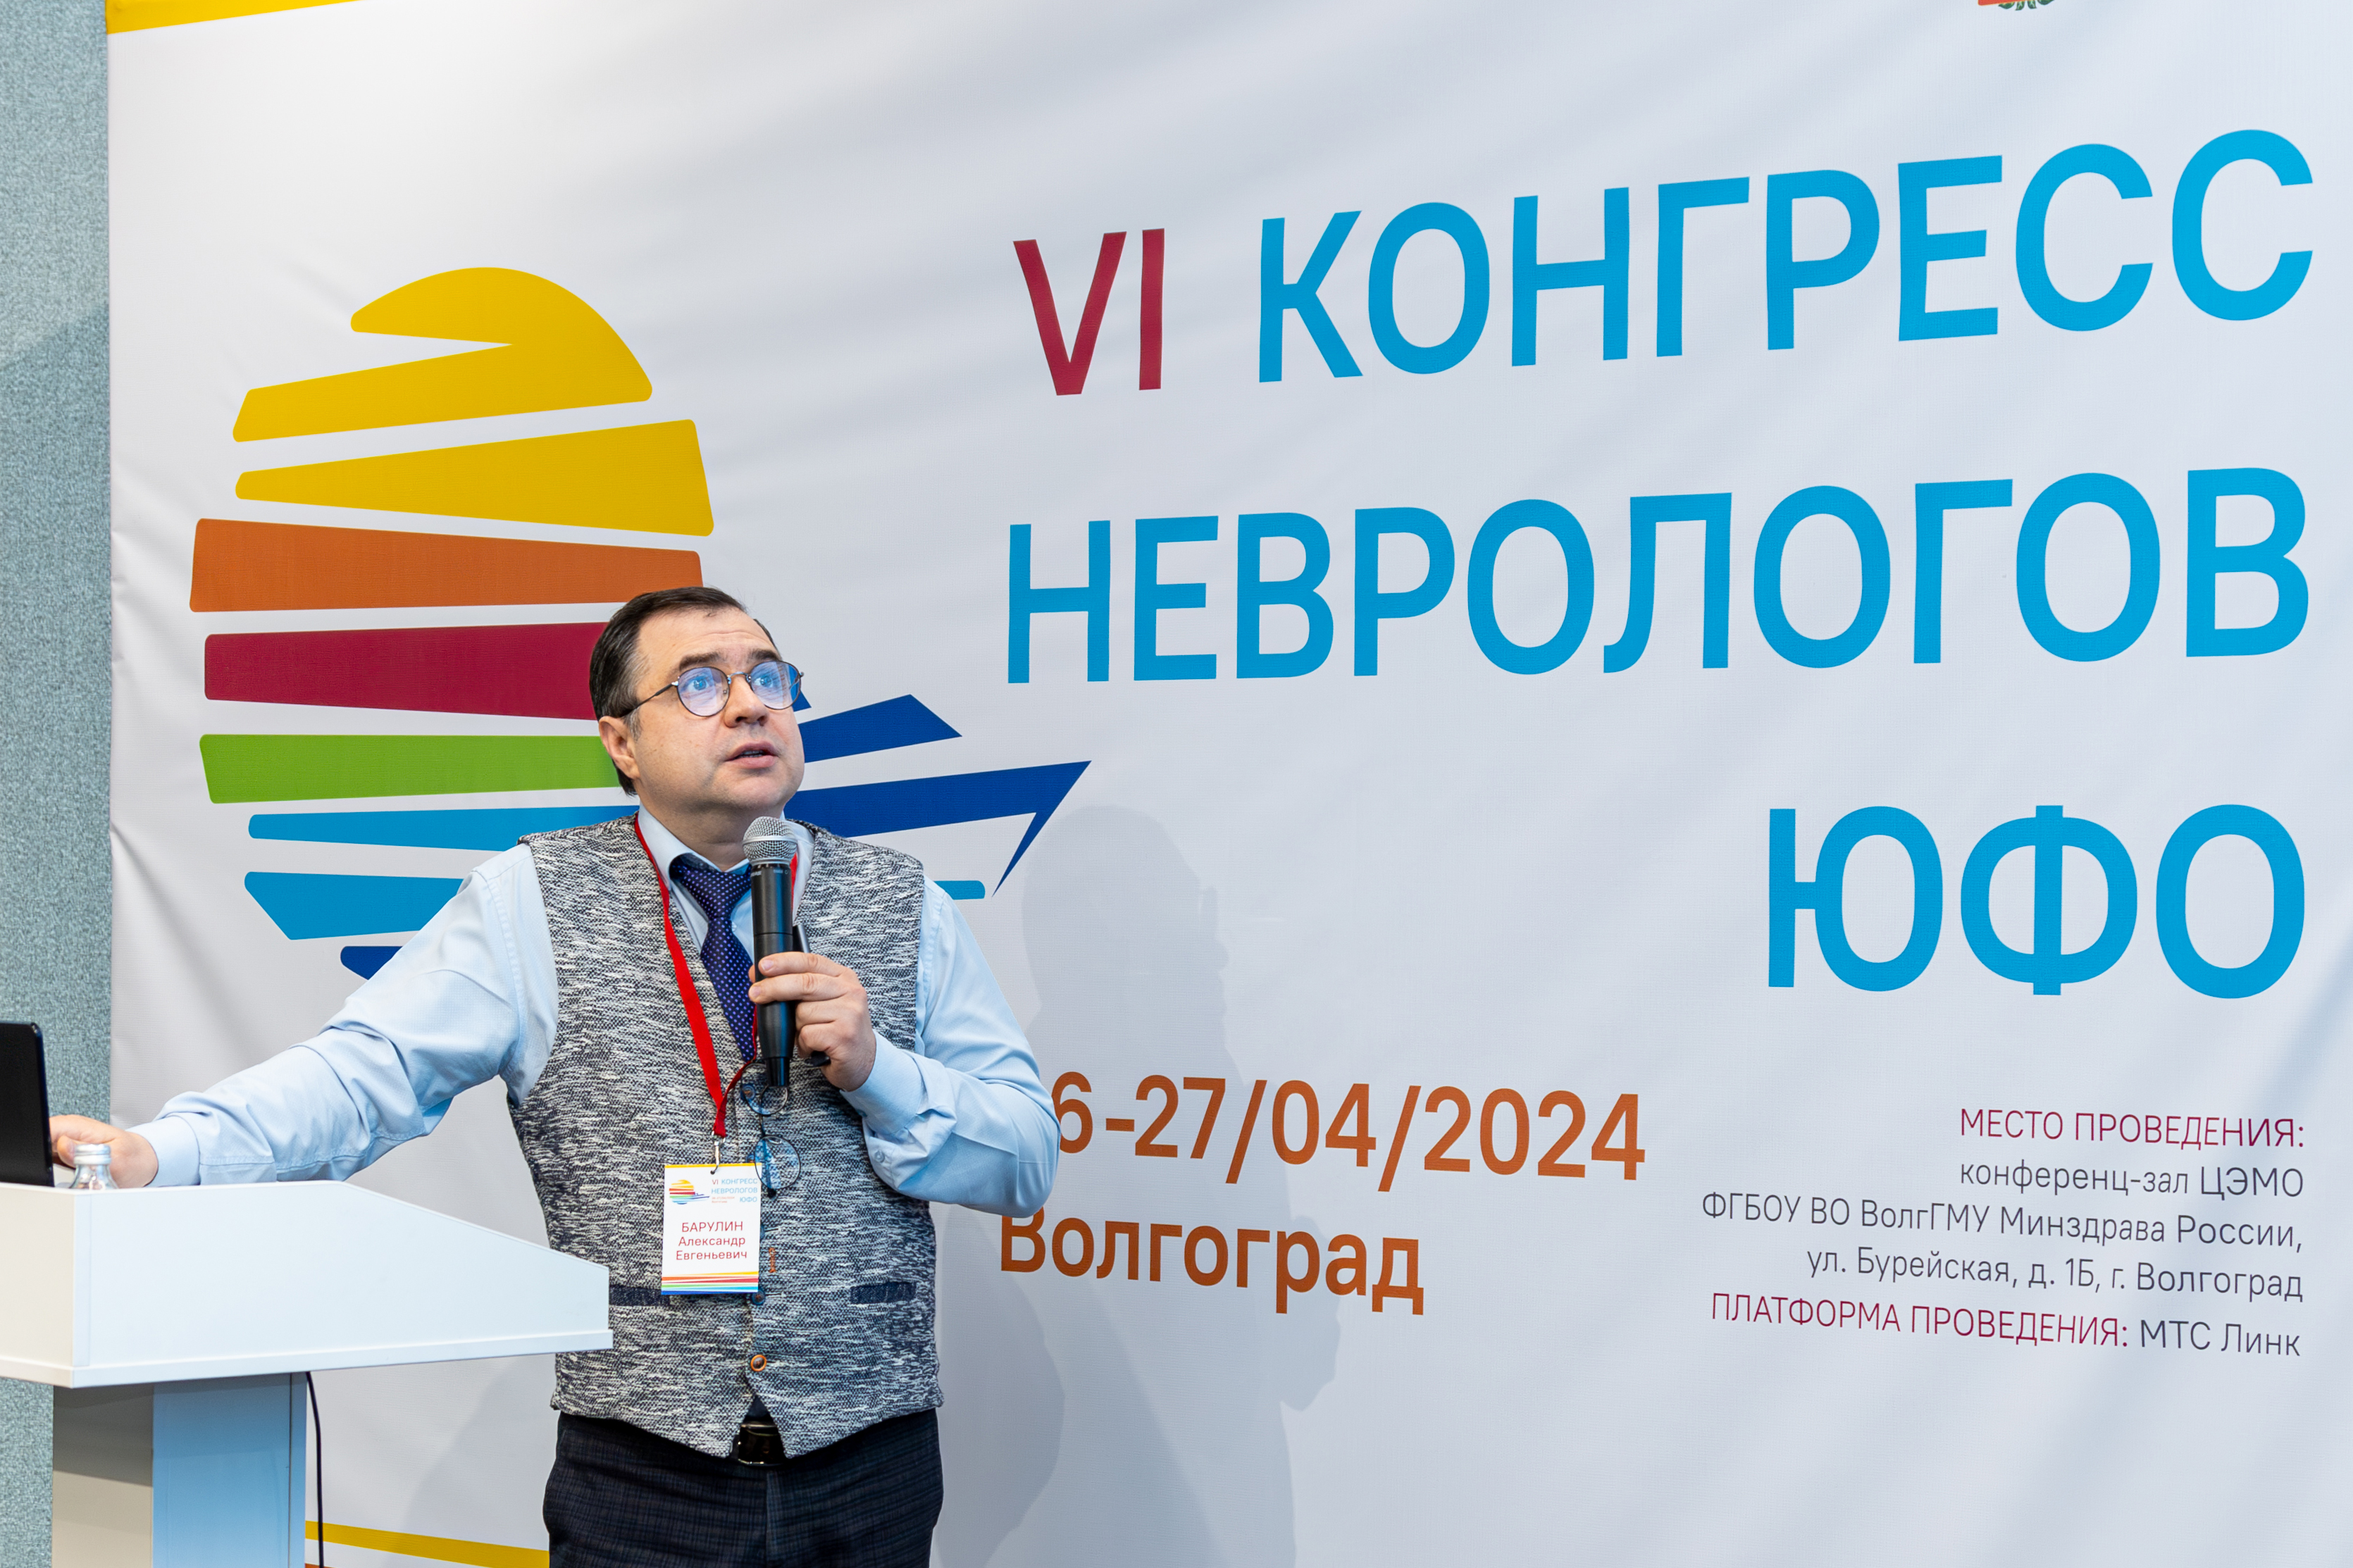 26-27 апреля 2024 года в Волгограде состоялся VI Конгресс неврологов ЮФО.